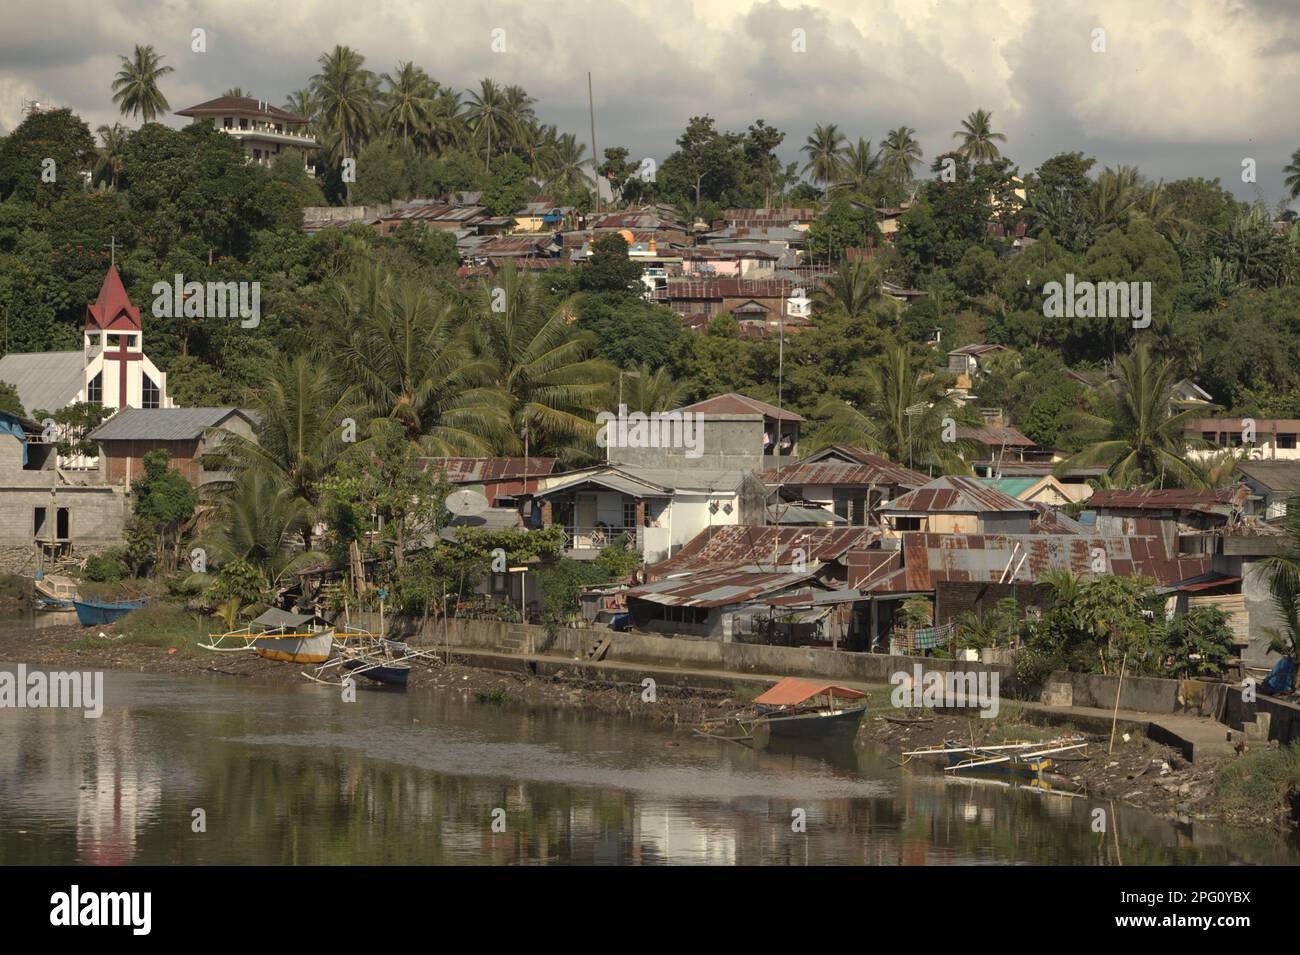 Des colonies, un bâtiment d'église et un paysage vallonné sont photographiés en premier plan de la rivière Tondano (rivière Manado) dans la zone côtière de la ville de Manado, au nord de Sulawesi, en Indonésie. Banque D'Images